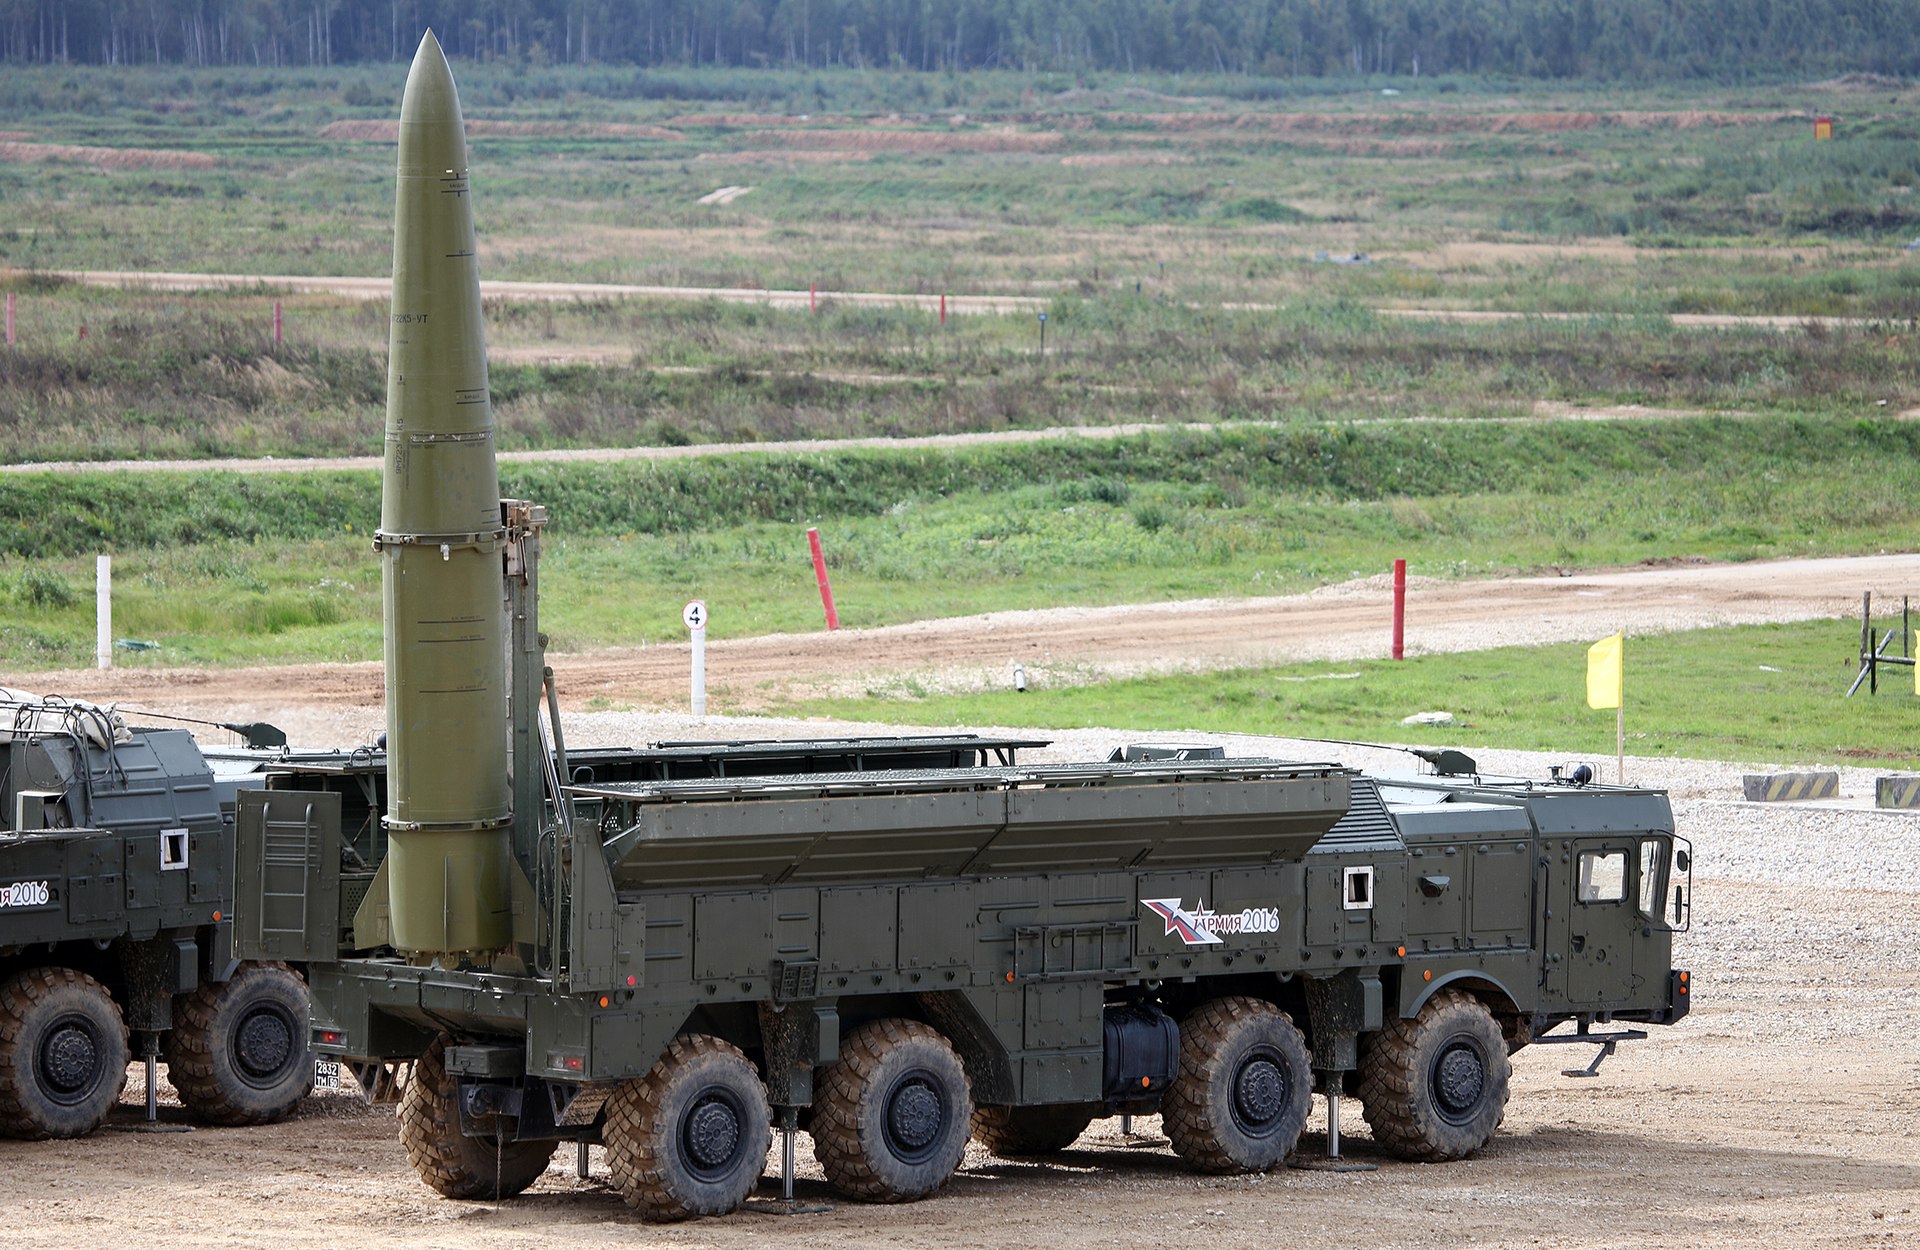 Il possibile uso delle armi atomiche della Russia nel conflitto in Ucraina